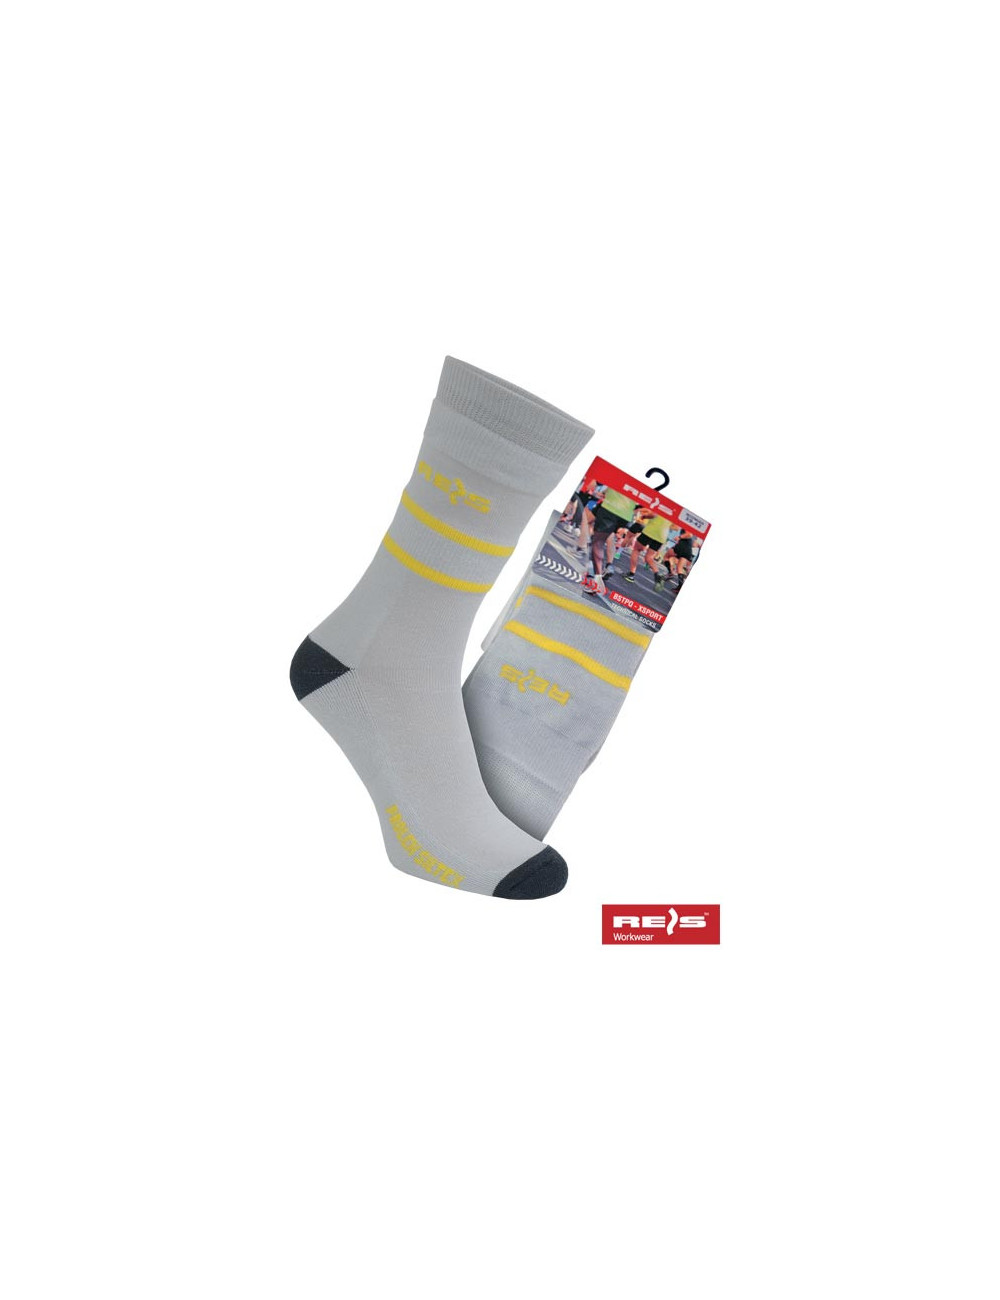 Socks bstpq-xsport s grey/steel Reis